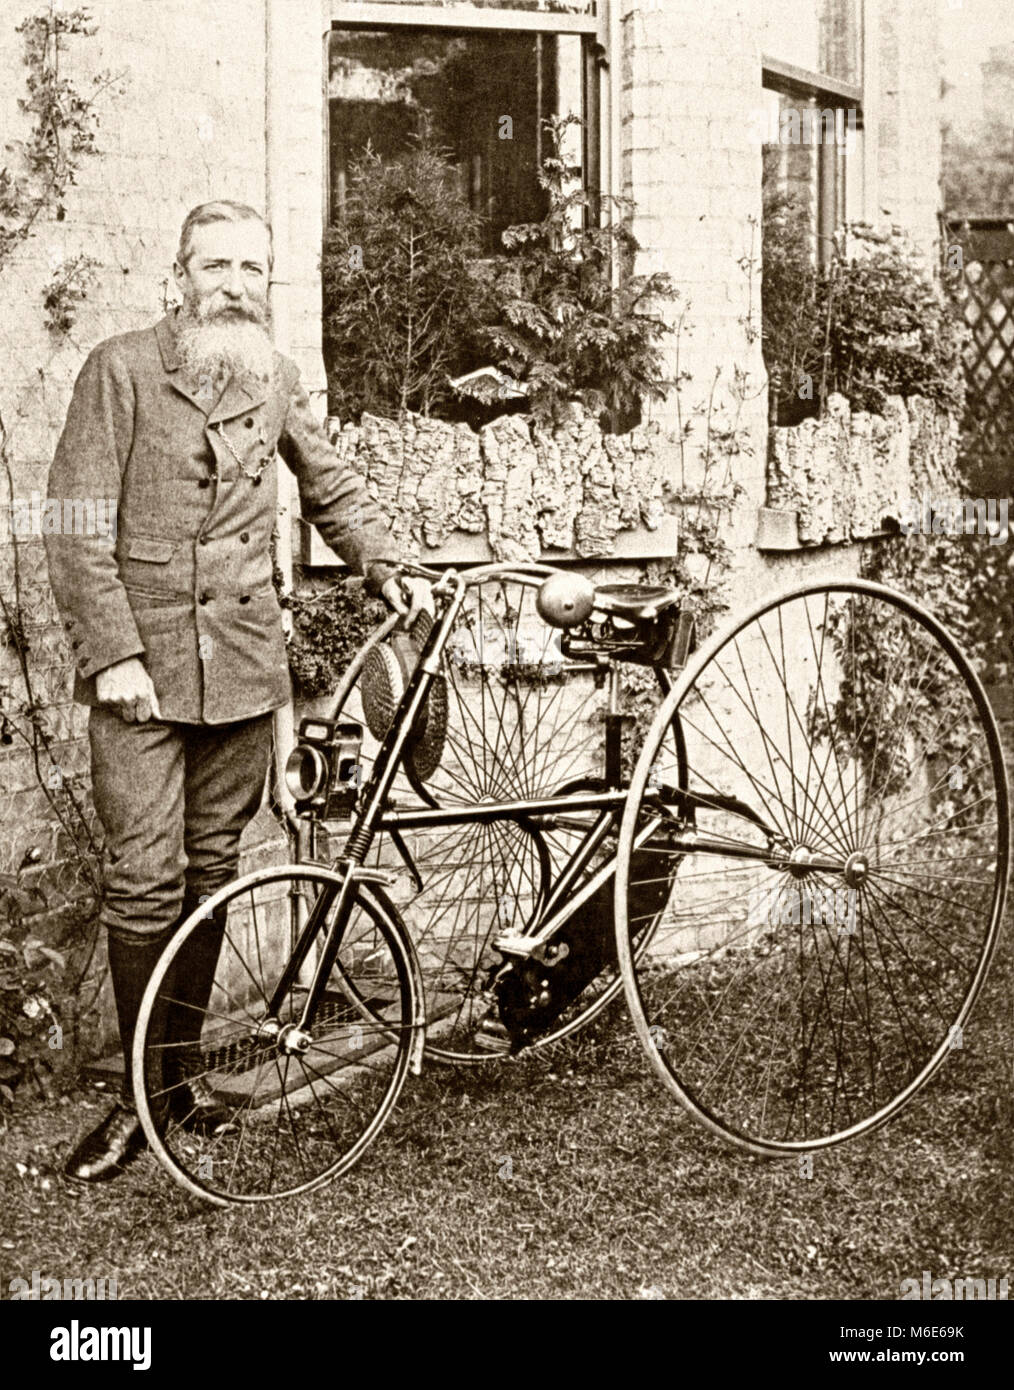 Thomas Humber zusammen mit einem Dreirad seines Unternehmens C. 1900. Thomas Humber (1841 - 1910) war ein britischer Ingenieur und Cycle Hersteller und gründete Humber Zyklen. Die drei Wheeler hatte zwei große Räder hinten mit einer viel kleineren Vorderrad - alle hatten Vollgummireifen Stockfoto